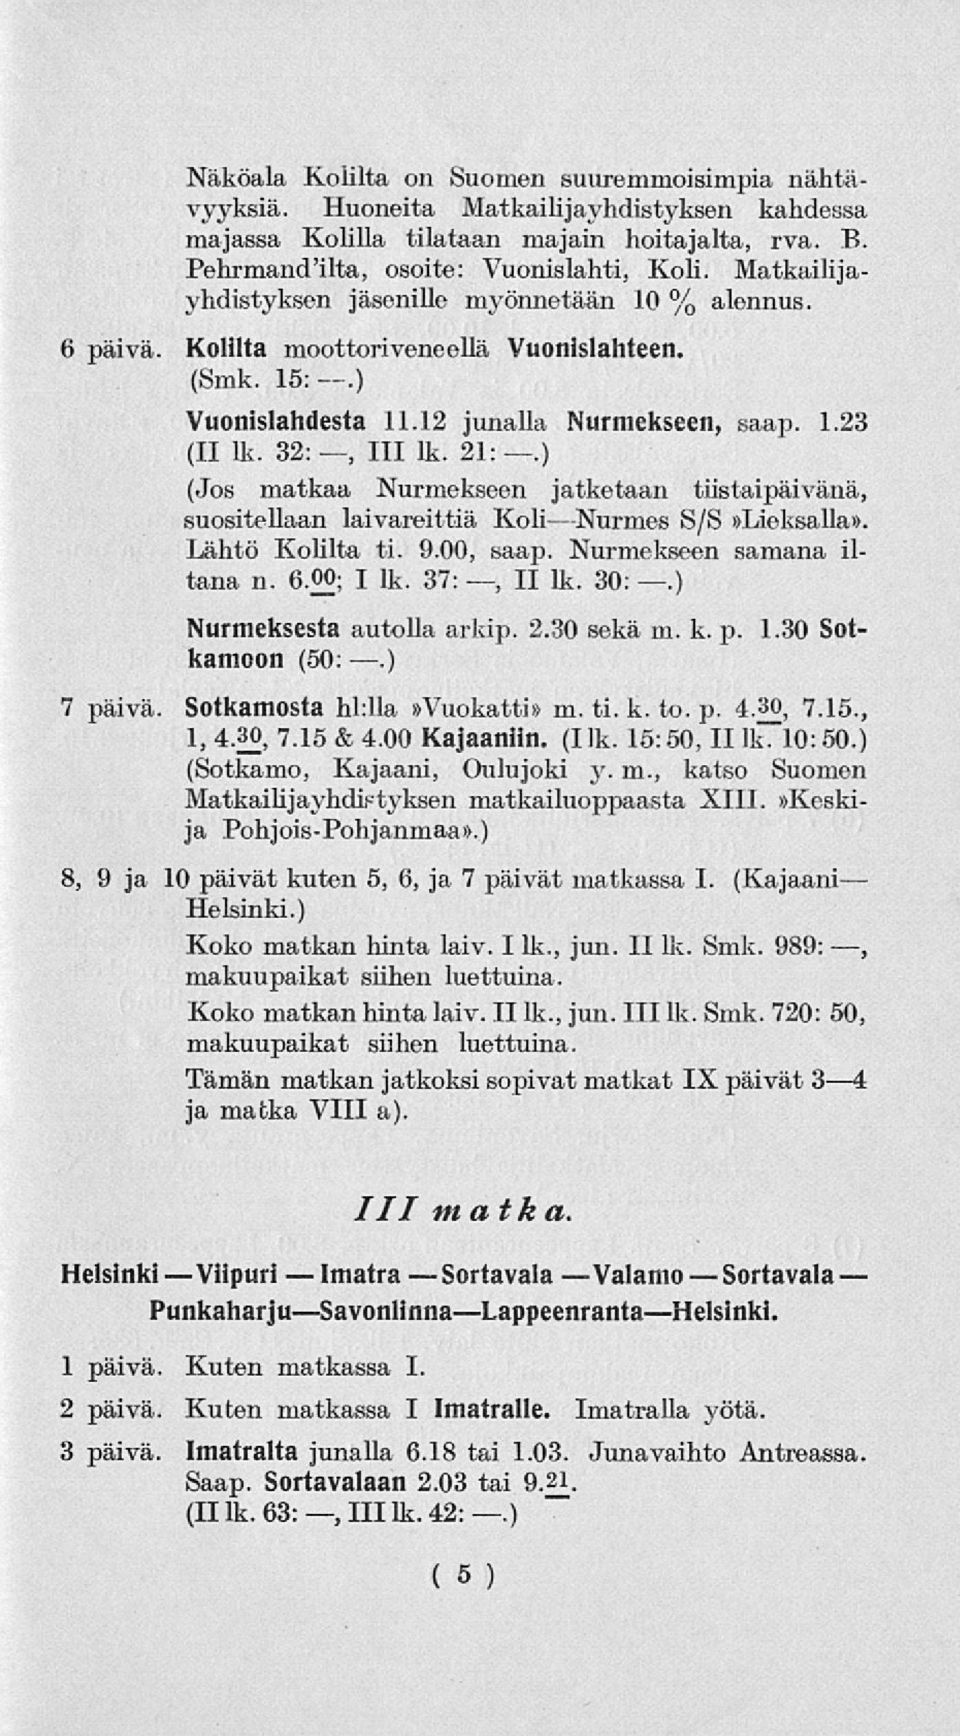 12 junalla Nurmekseen, saap. 1.23 (II lk. 32:, 111 lk. 21:.) (Jos matkaa Nurmekseen jatketaan tiistaipäivänä, suositellaan laivareittiä KoliNurmes S/S»Lieksalla». Lähtö Kolilta ti. 9.00, saap.